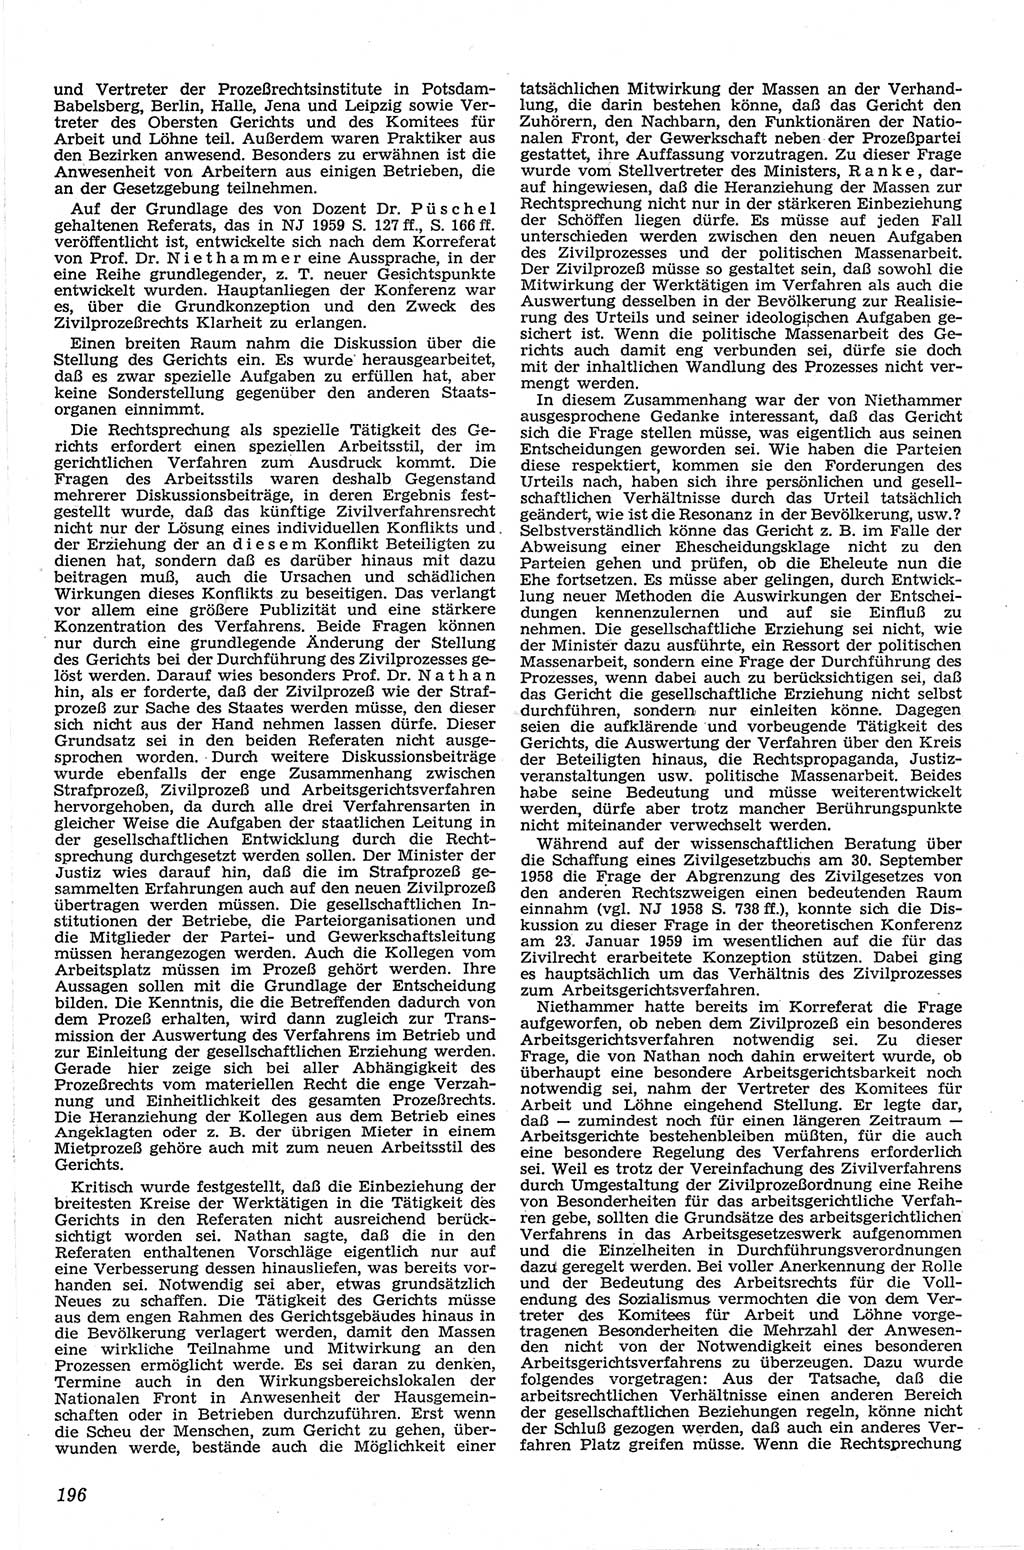 Neue Justiz (NJ), Zeitschrift für Recht und Rechtswissenschaft [Deutsche Demokratische Republik (DDR)], 13. Jahrgang 1959, Seite 196 (NJ DDR 1959, S. 196)